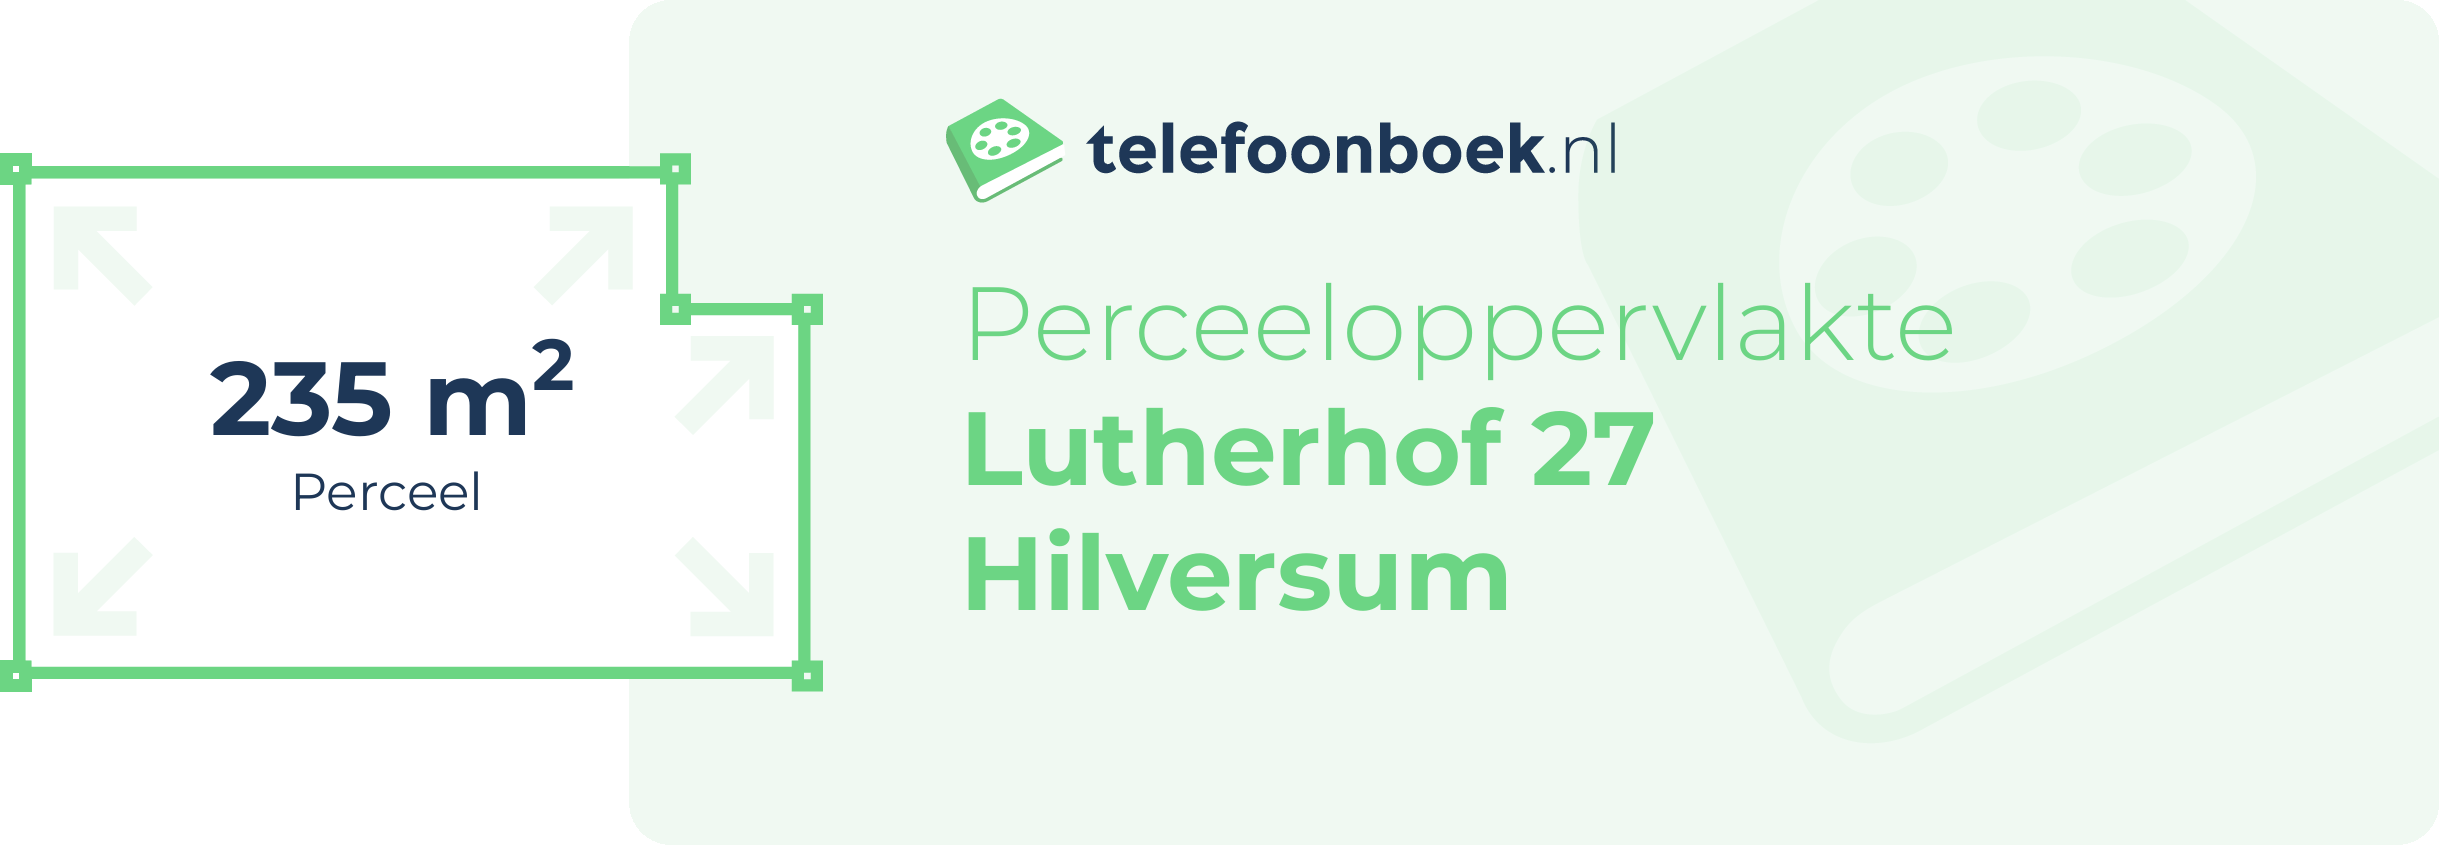 Perceeloppervlakte Lutherhof 27 Hilversum